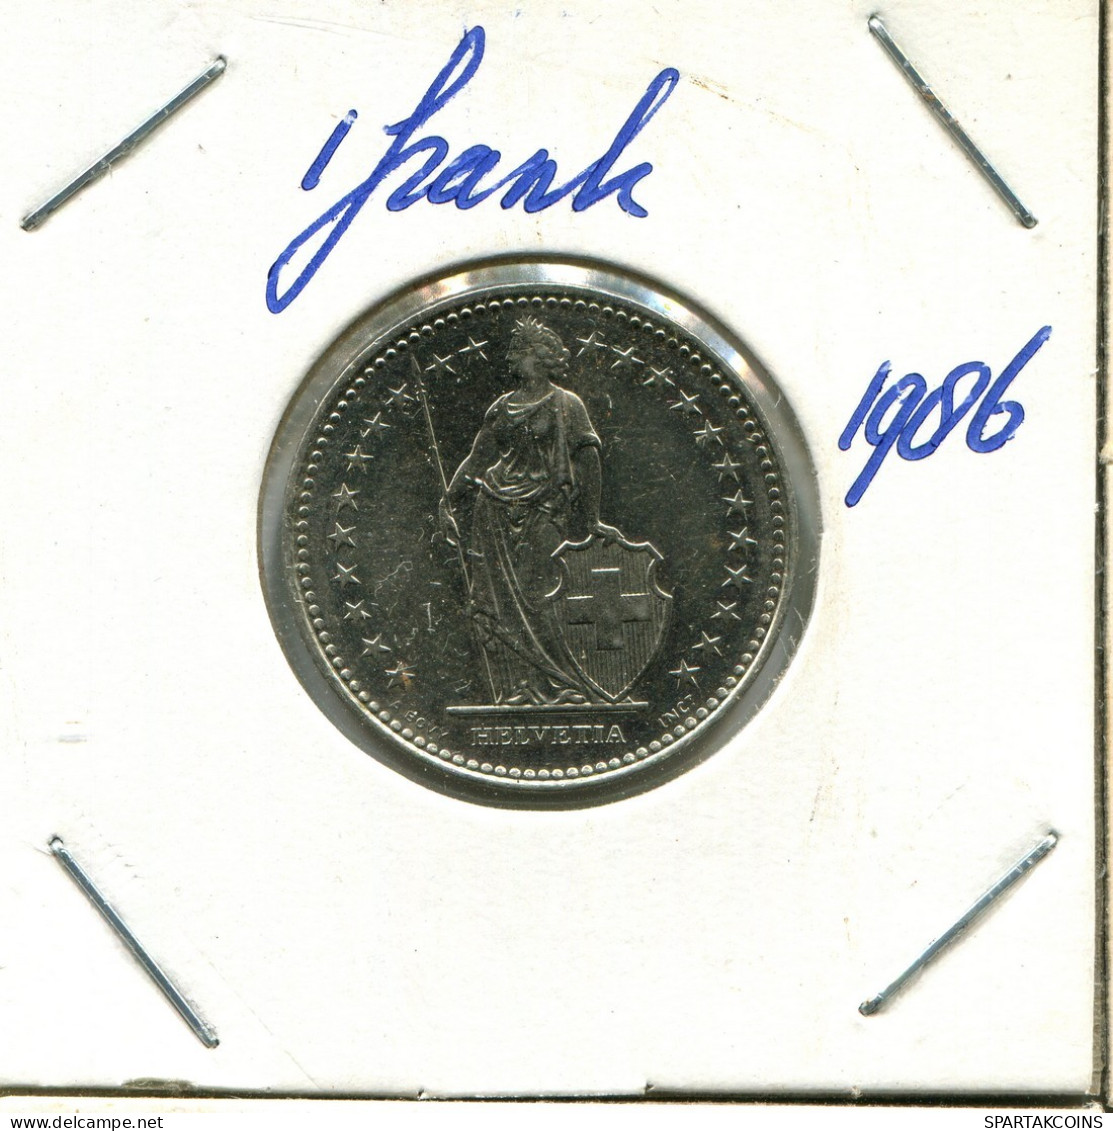 1 FRANC 1986 B SWITZERLAND Coin #AY063.3.U.A - Autres & Non Classés